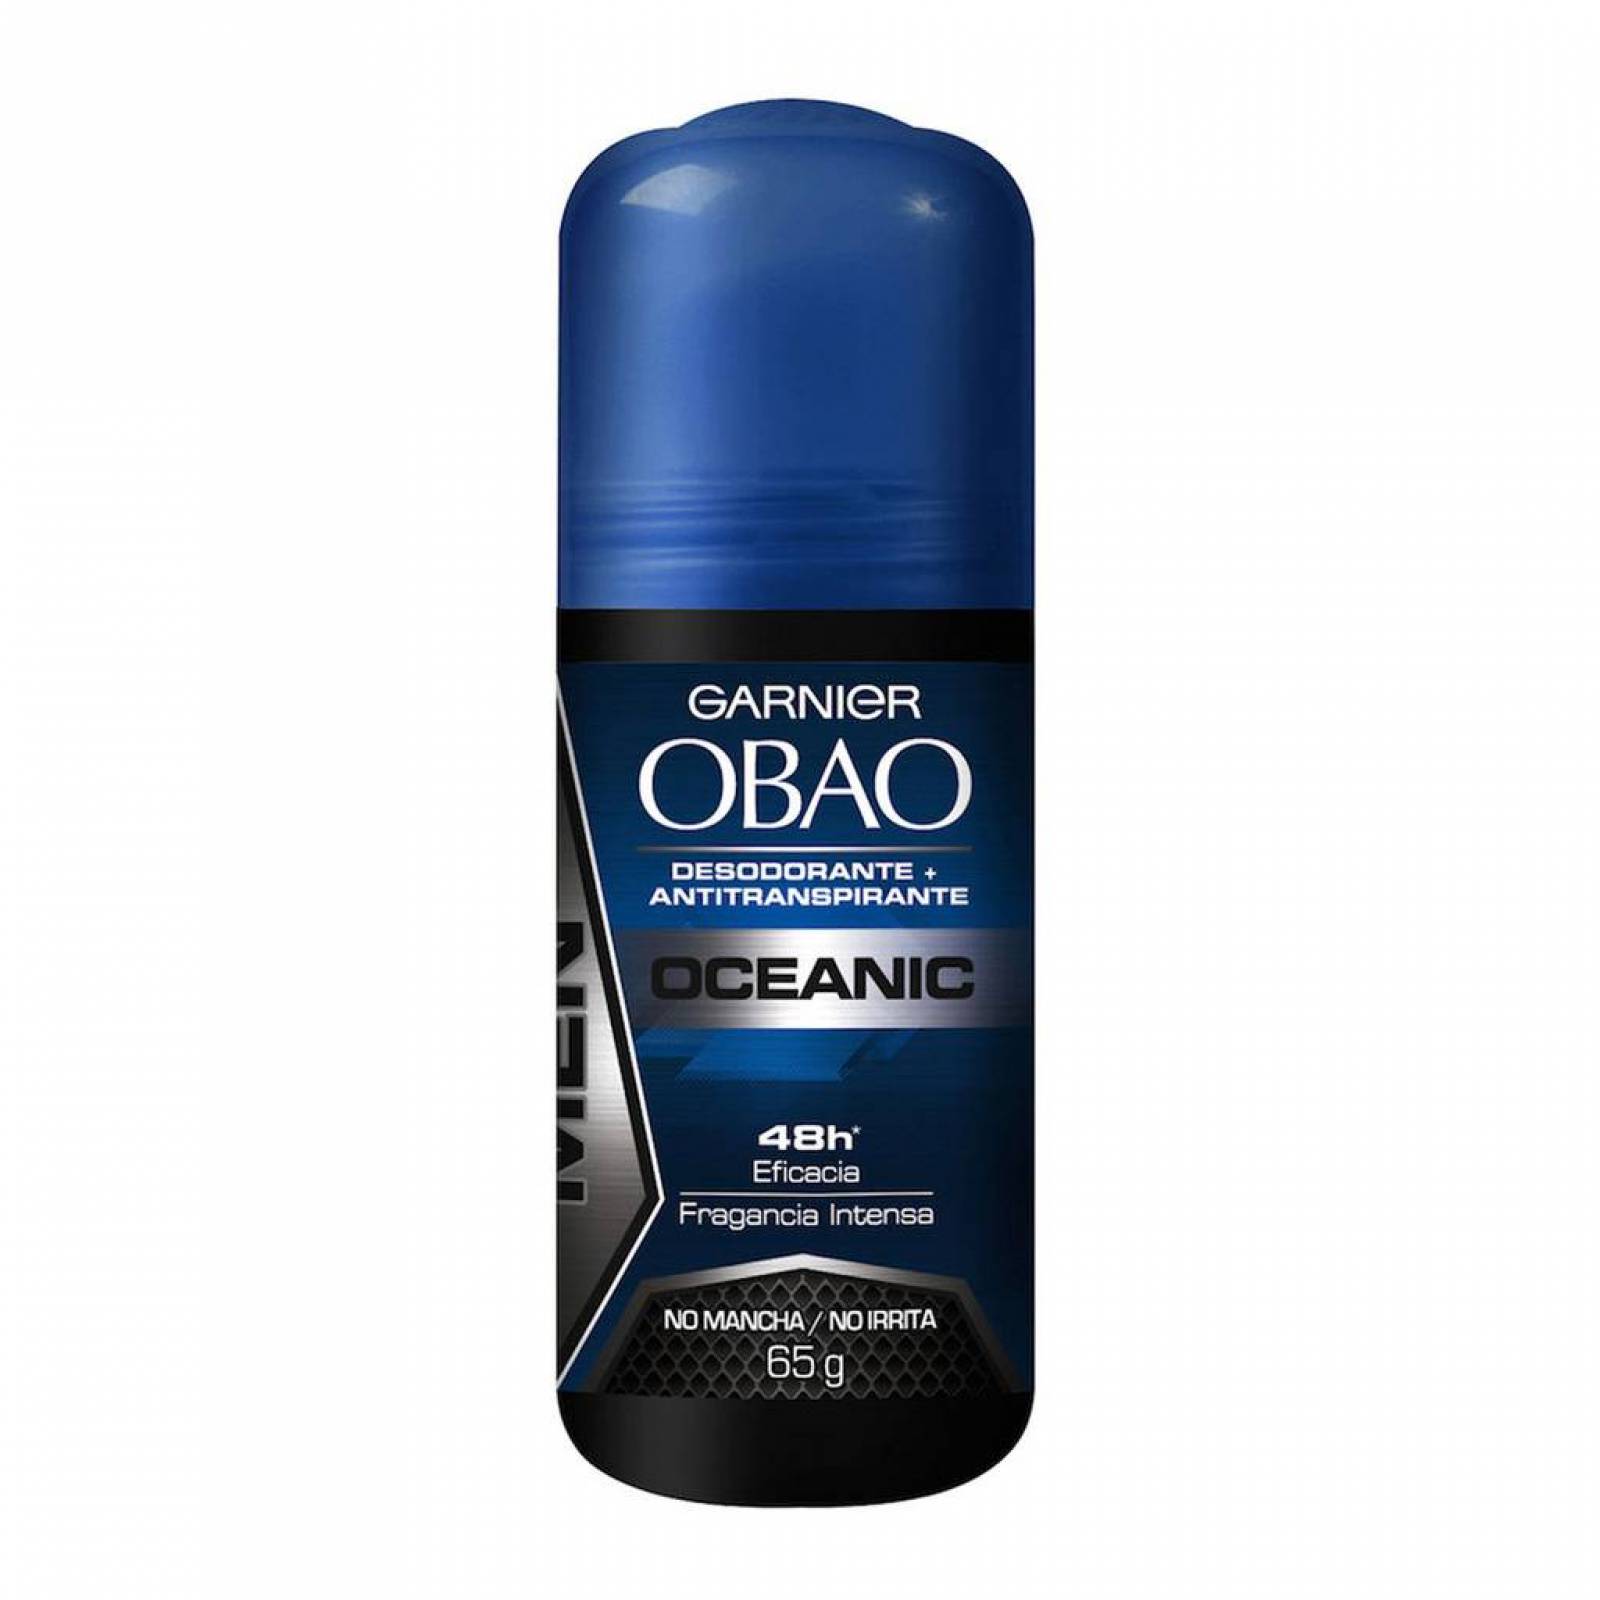 Desodorante Obao Roll On Men Oceánico 48 Horas Garnier